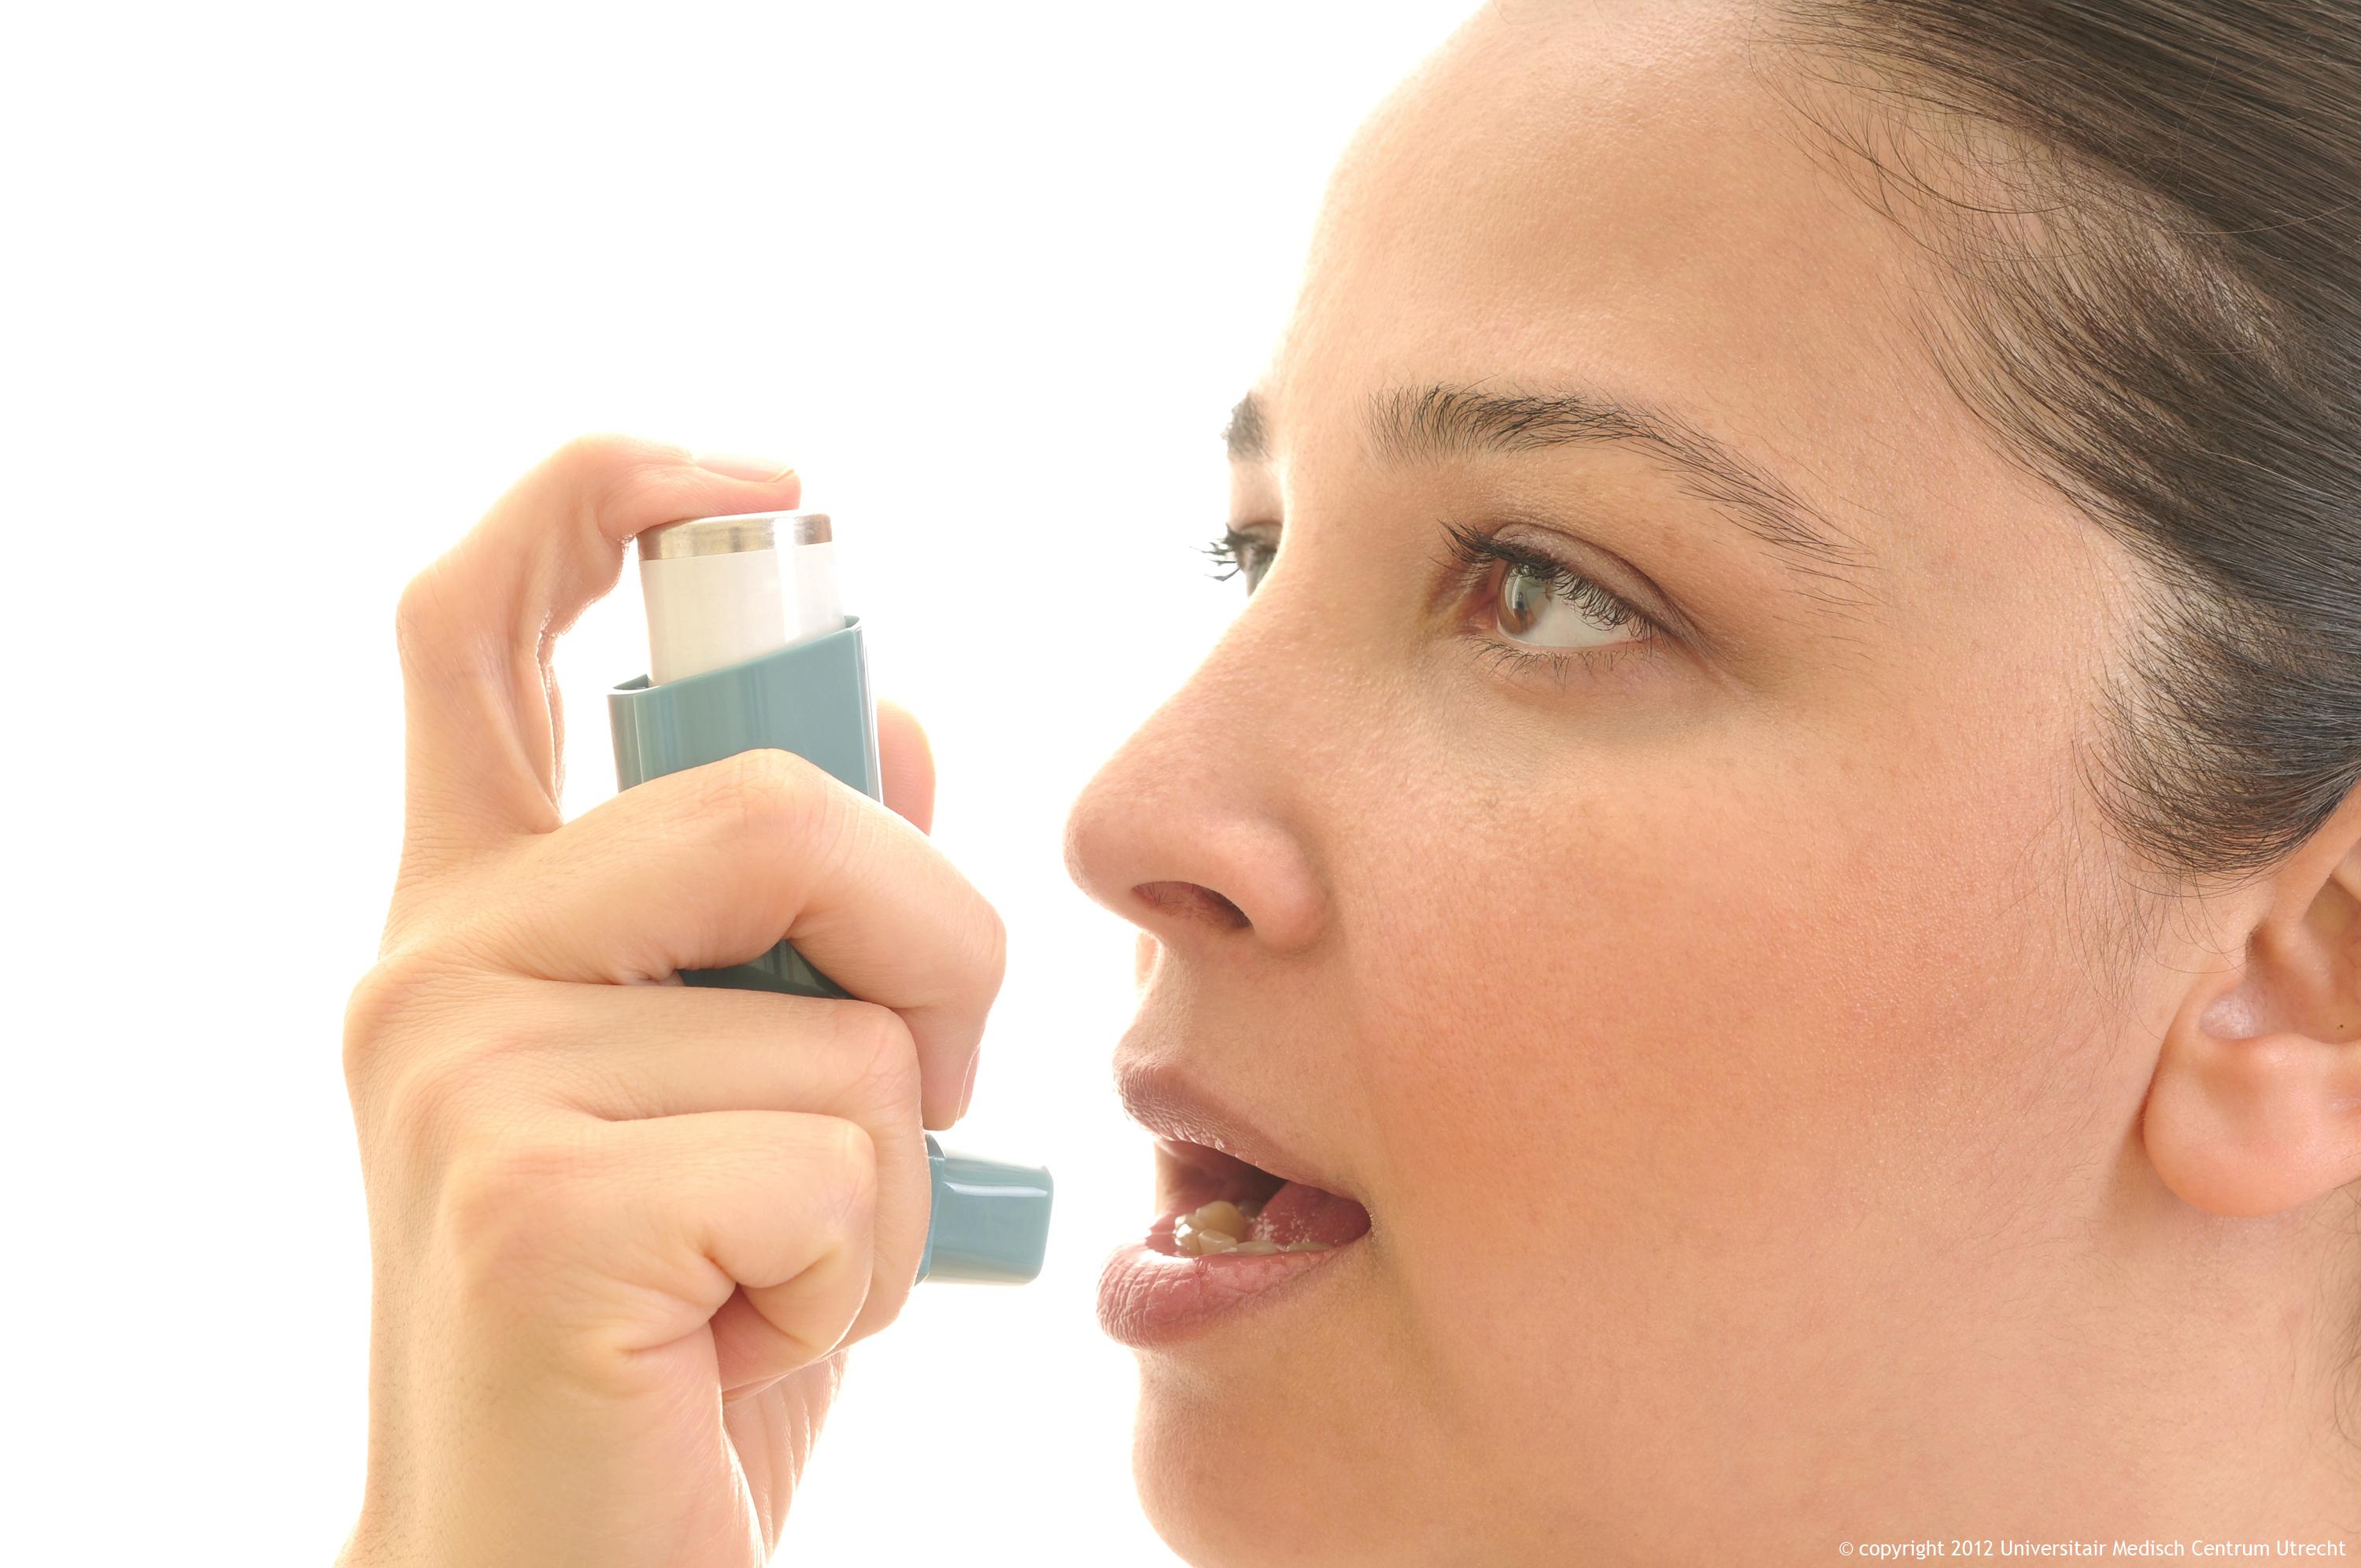 Bezmaksas ārstējies no astmas